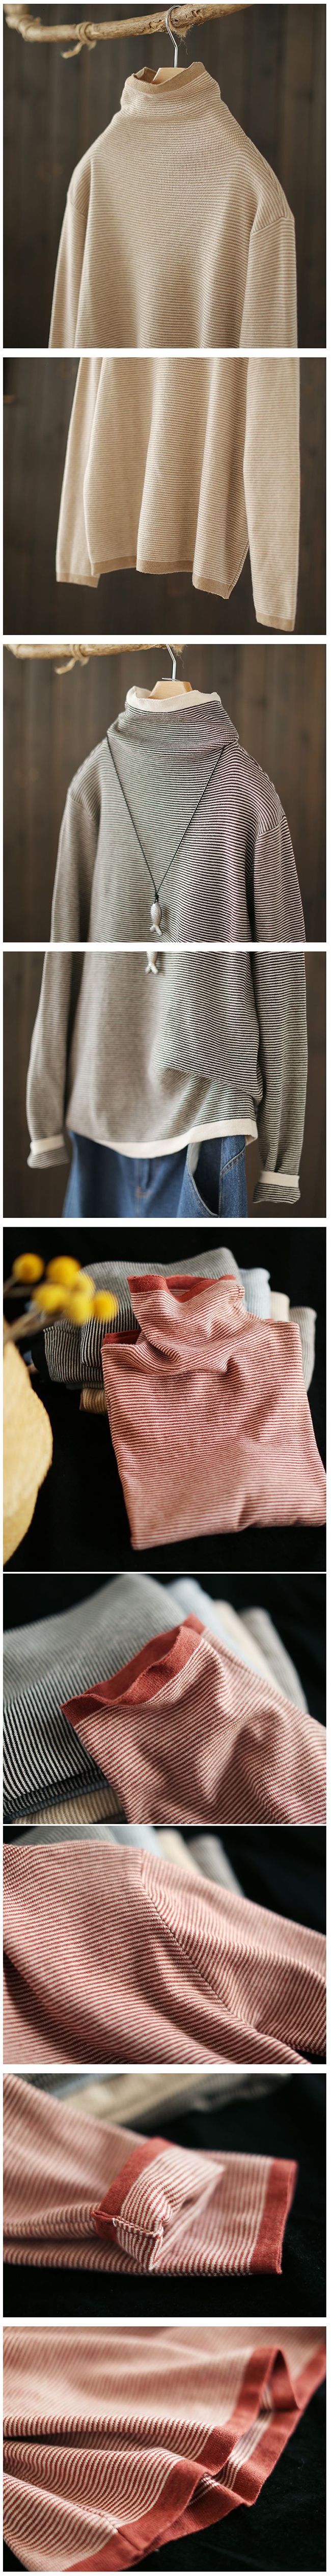 軟糯溫和條紋高領毛衣寬鬆長袖針織衫-設計所在